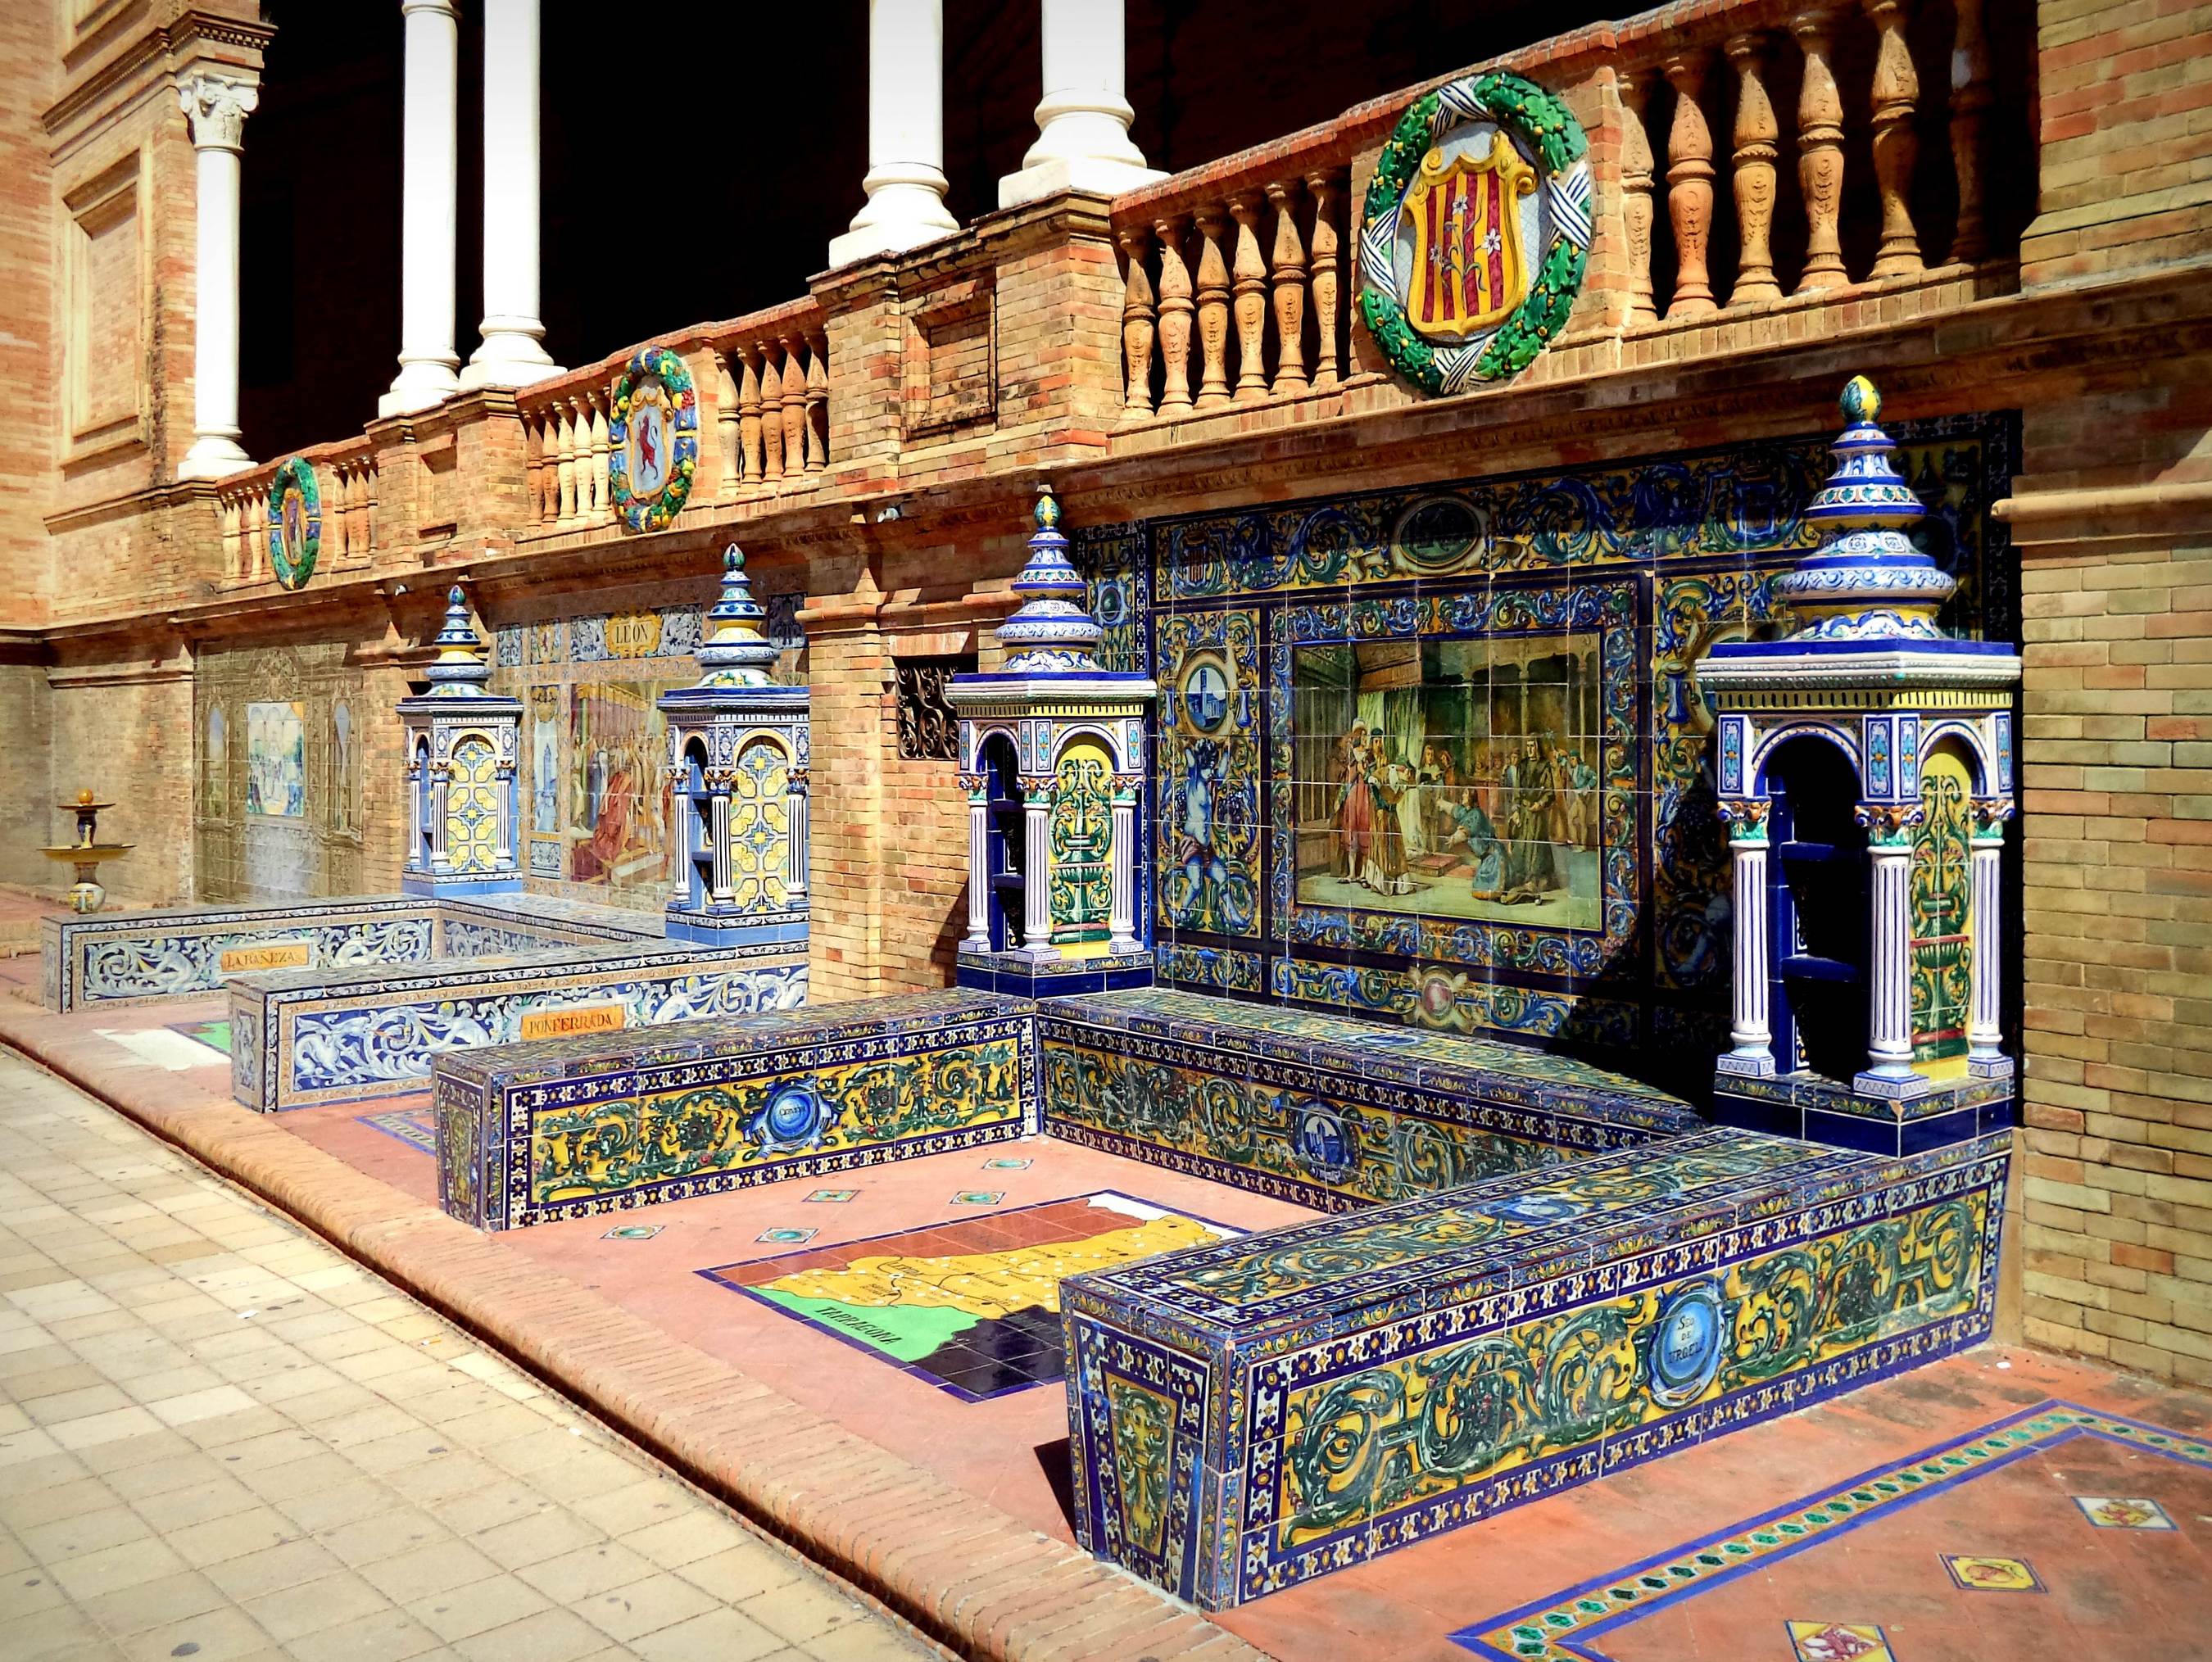 Azulejos ozdobne płytki ceramiczne - zwiedzanie Andaluzji